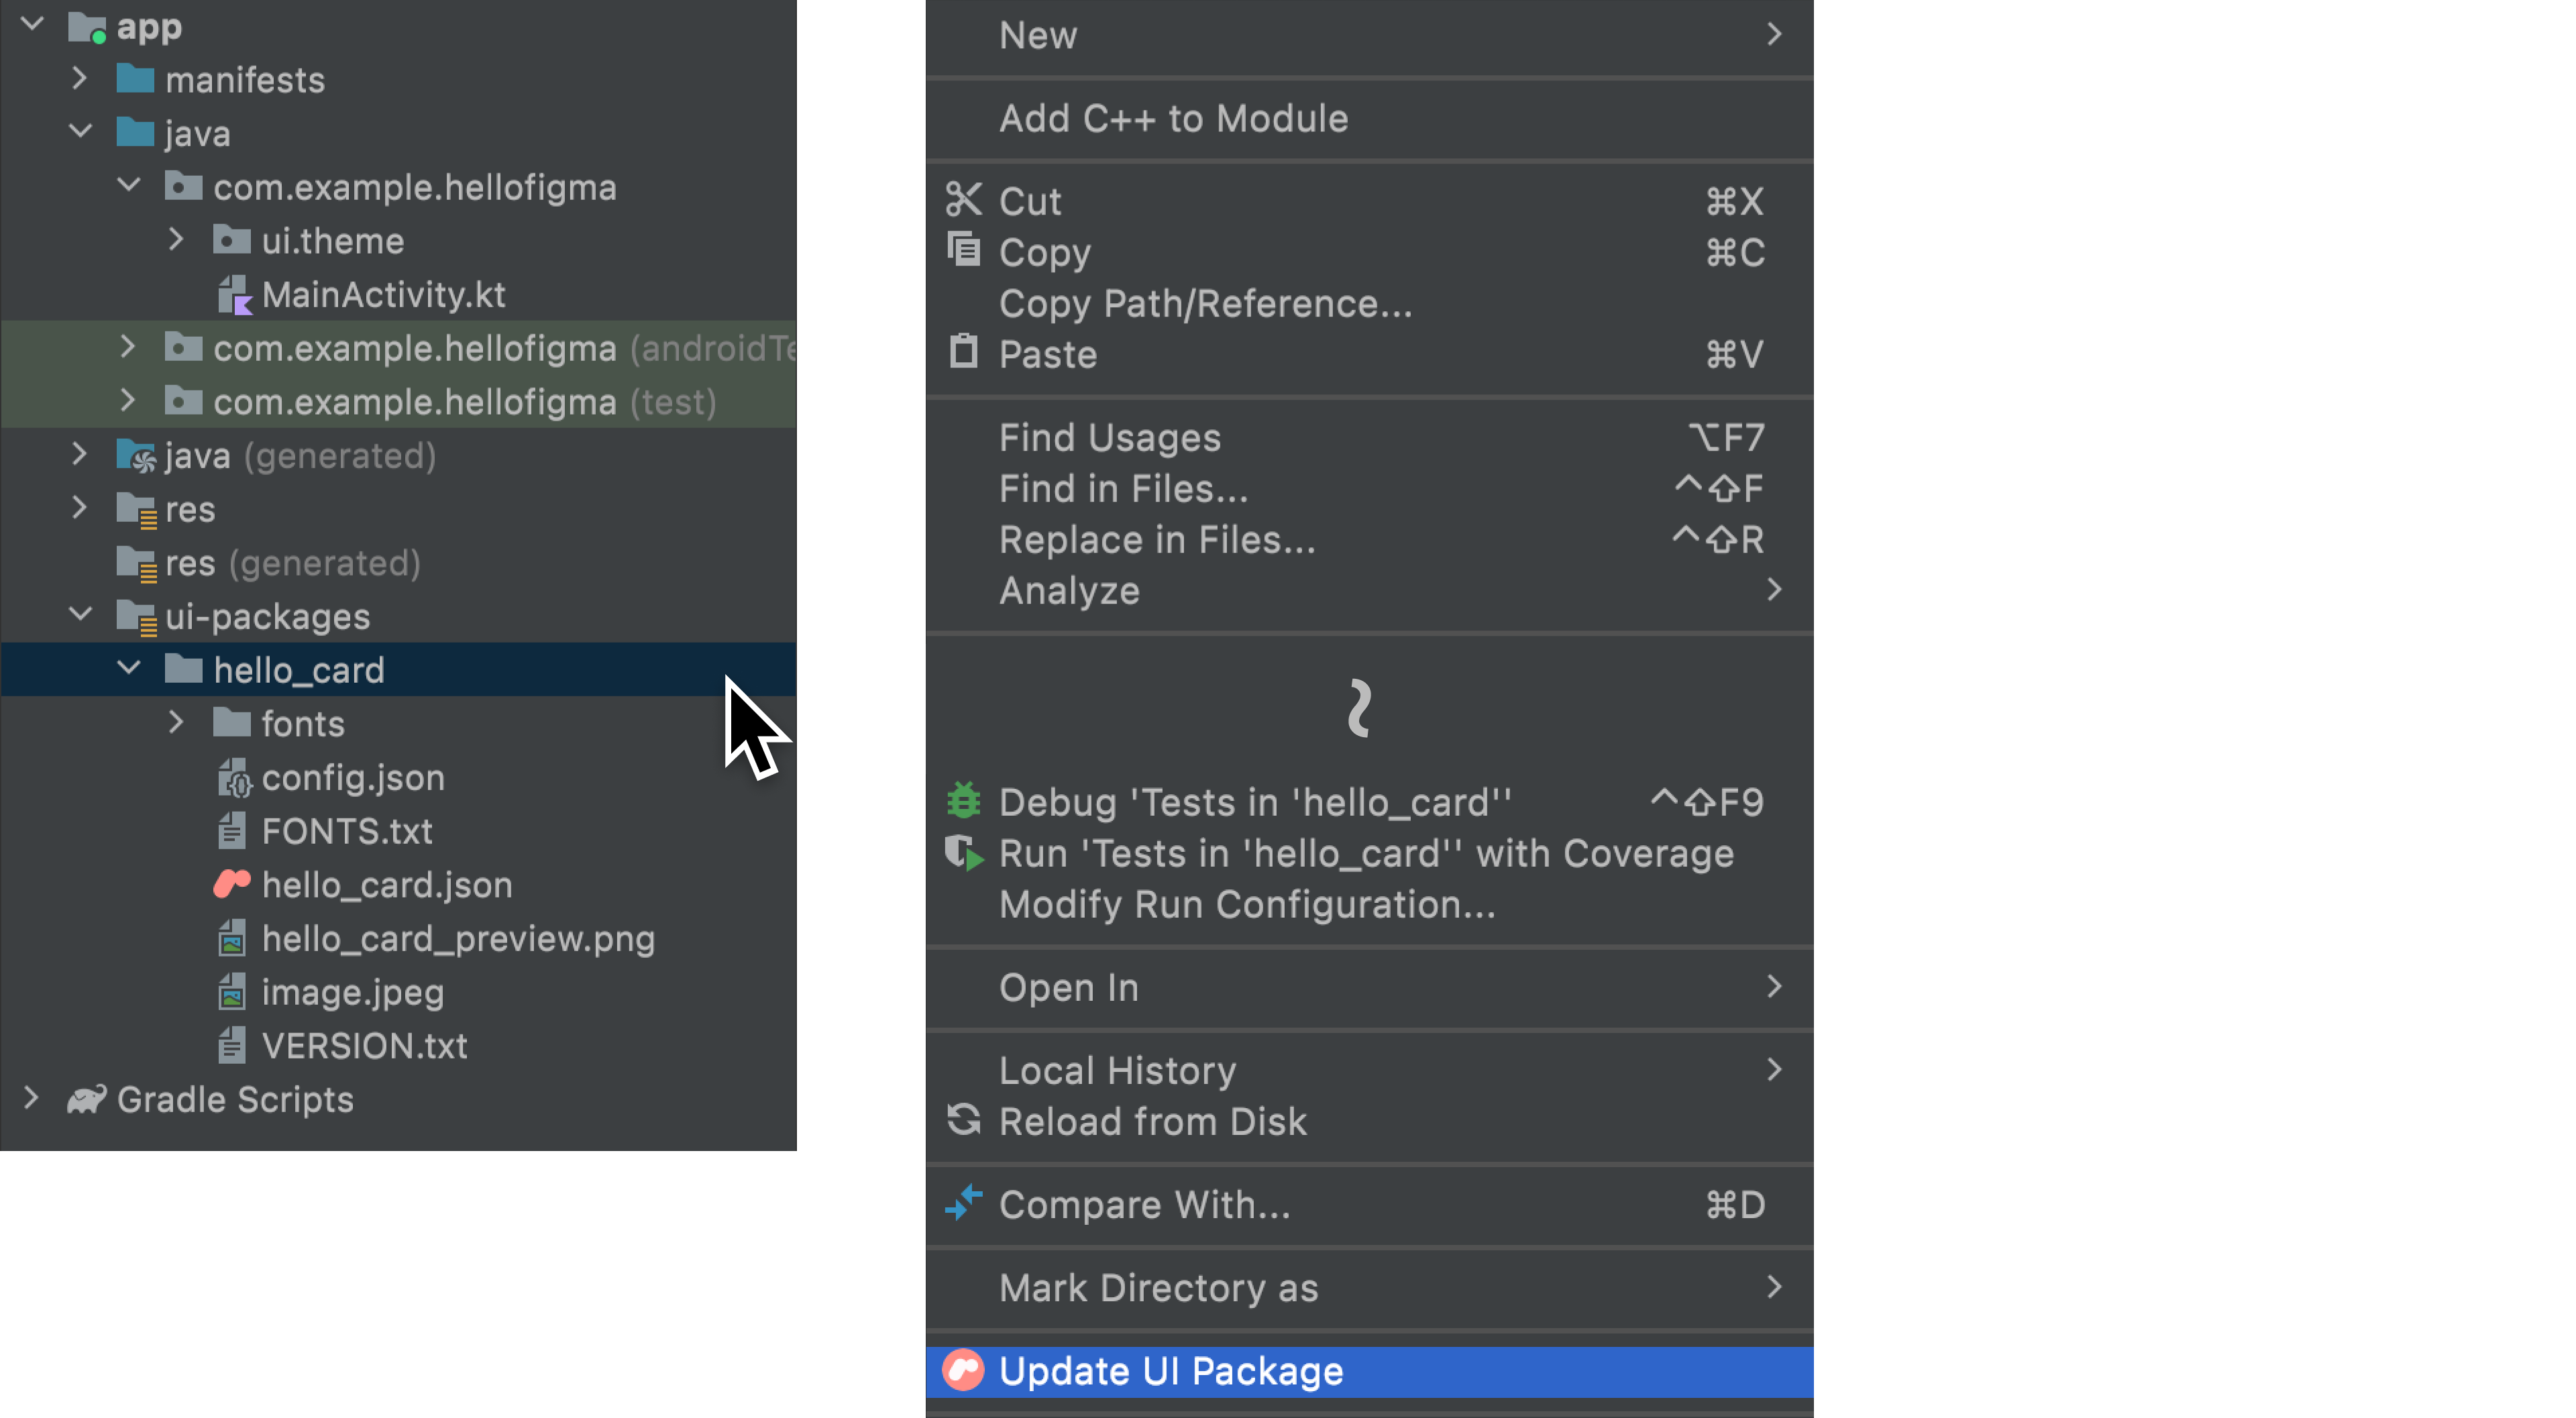 Opção "Update UI Package" no menu de contexto